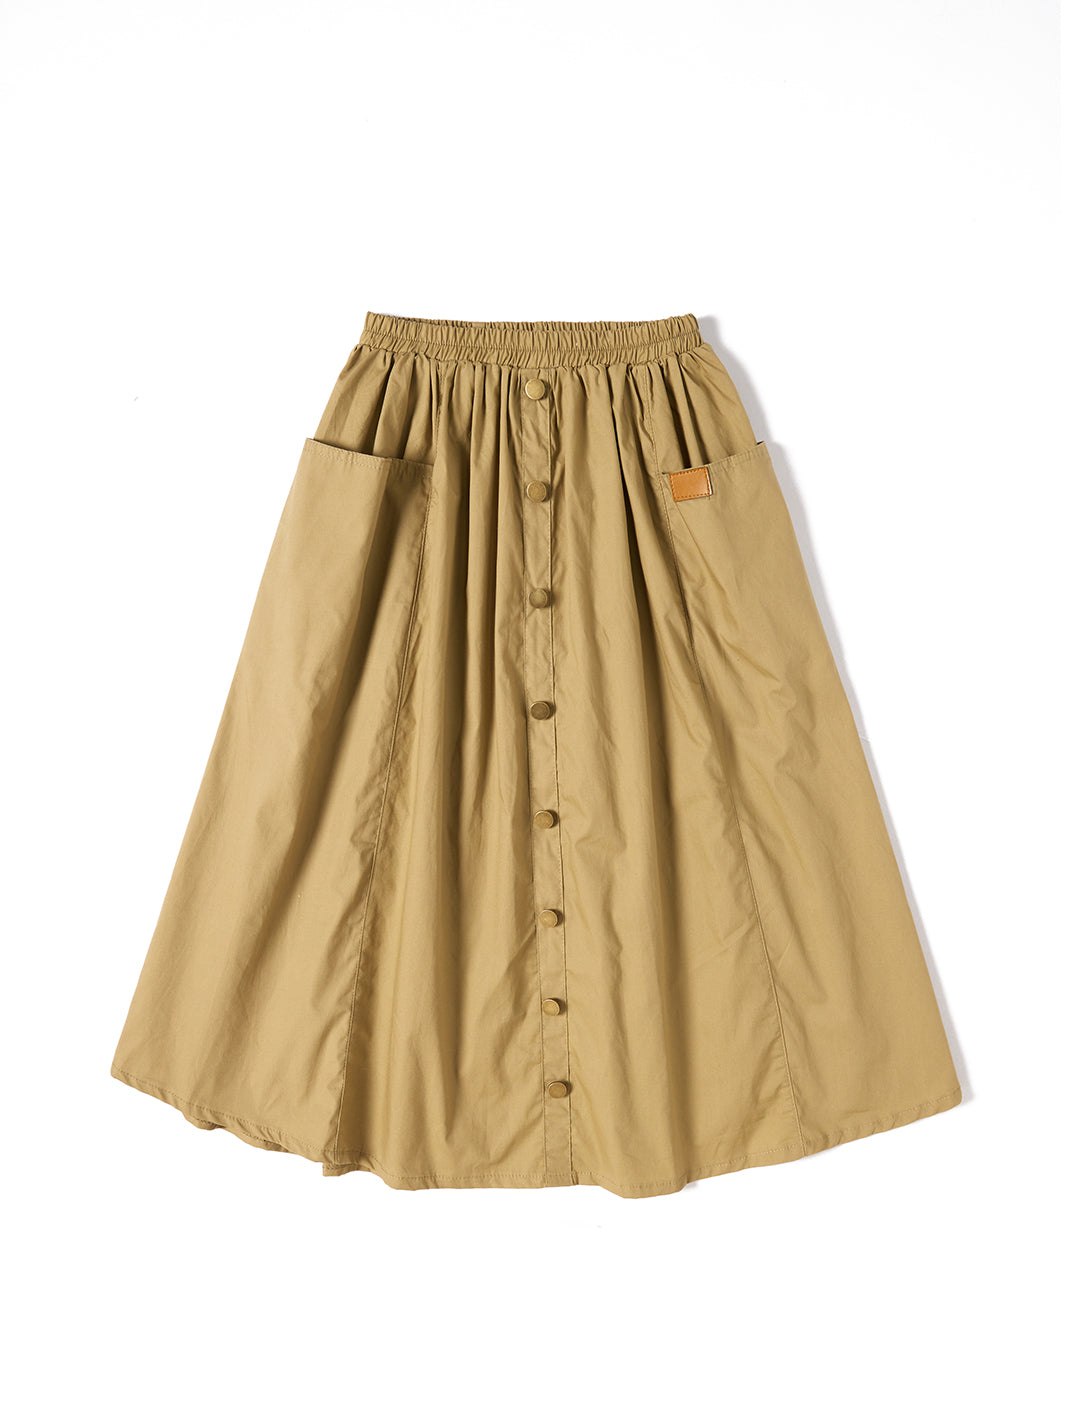 Gathers Maxi Length Skirt - Deep Beige